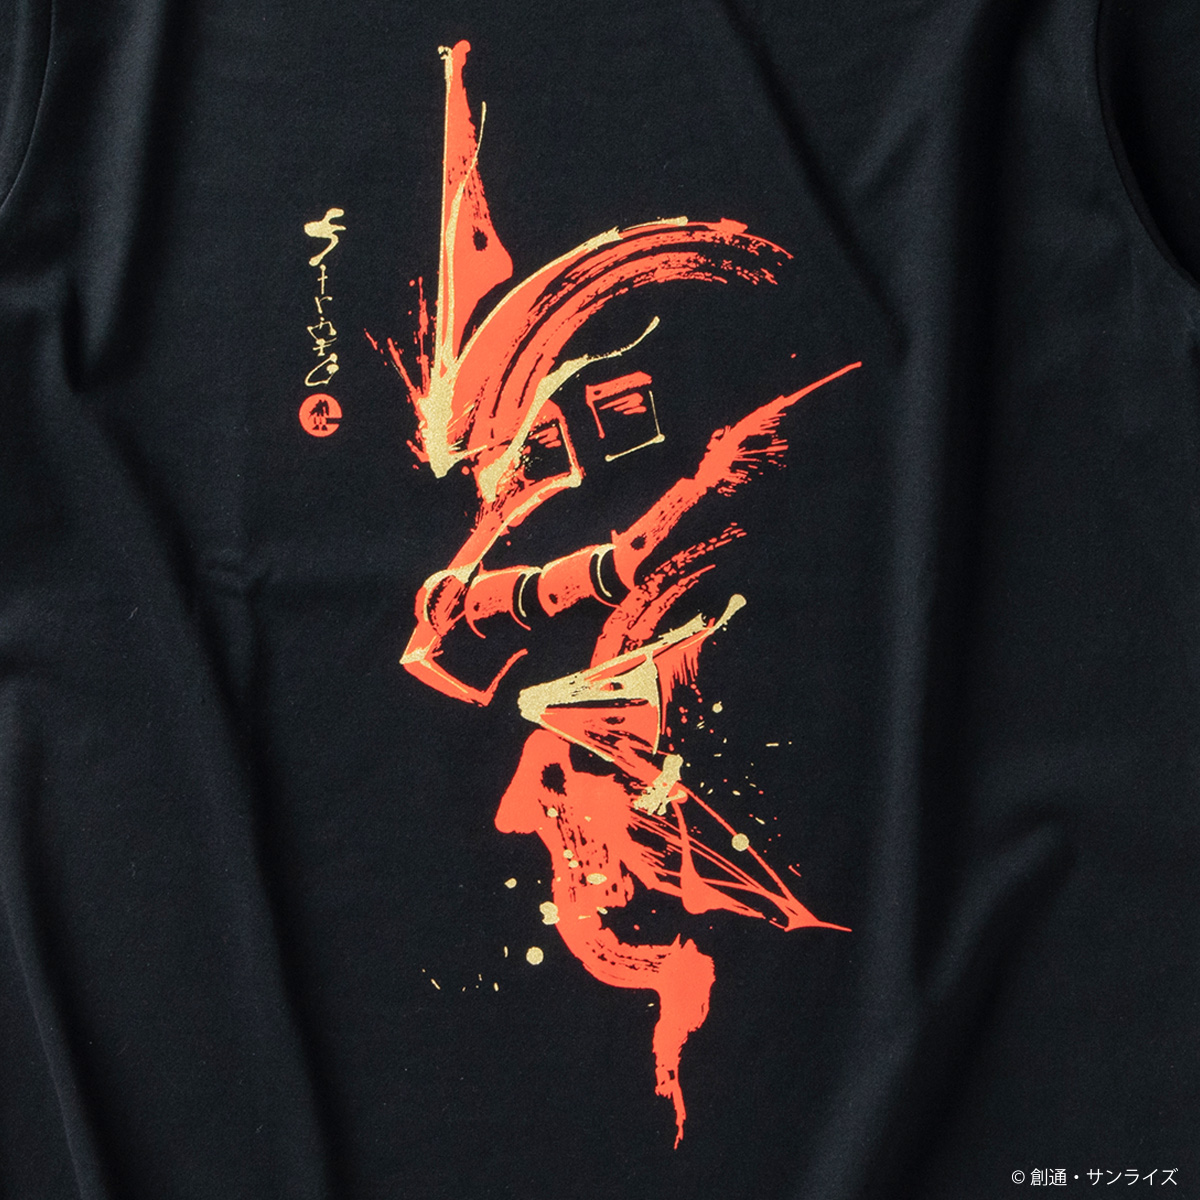 『機動戦士ガンダム』歴戦のモビルスーツを筆絵風の和柄デザインに STRICT-G JAPAN筆絵タッチの和柄長袖Tシャツが登場！